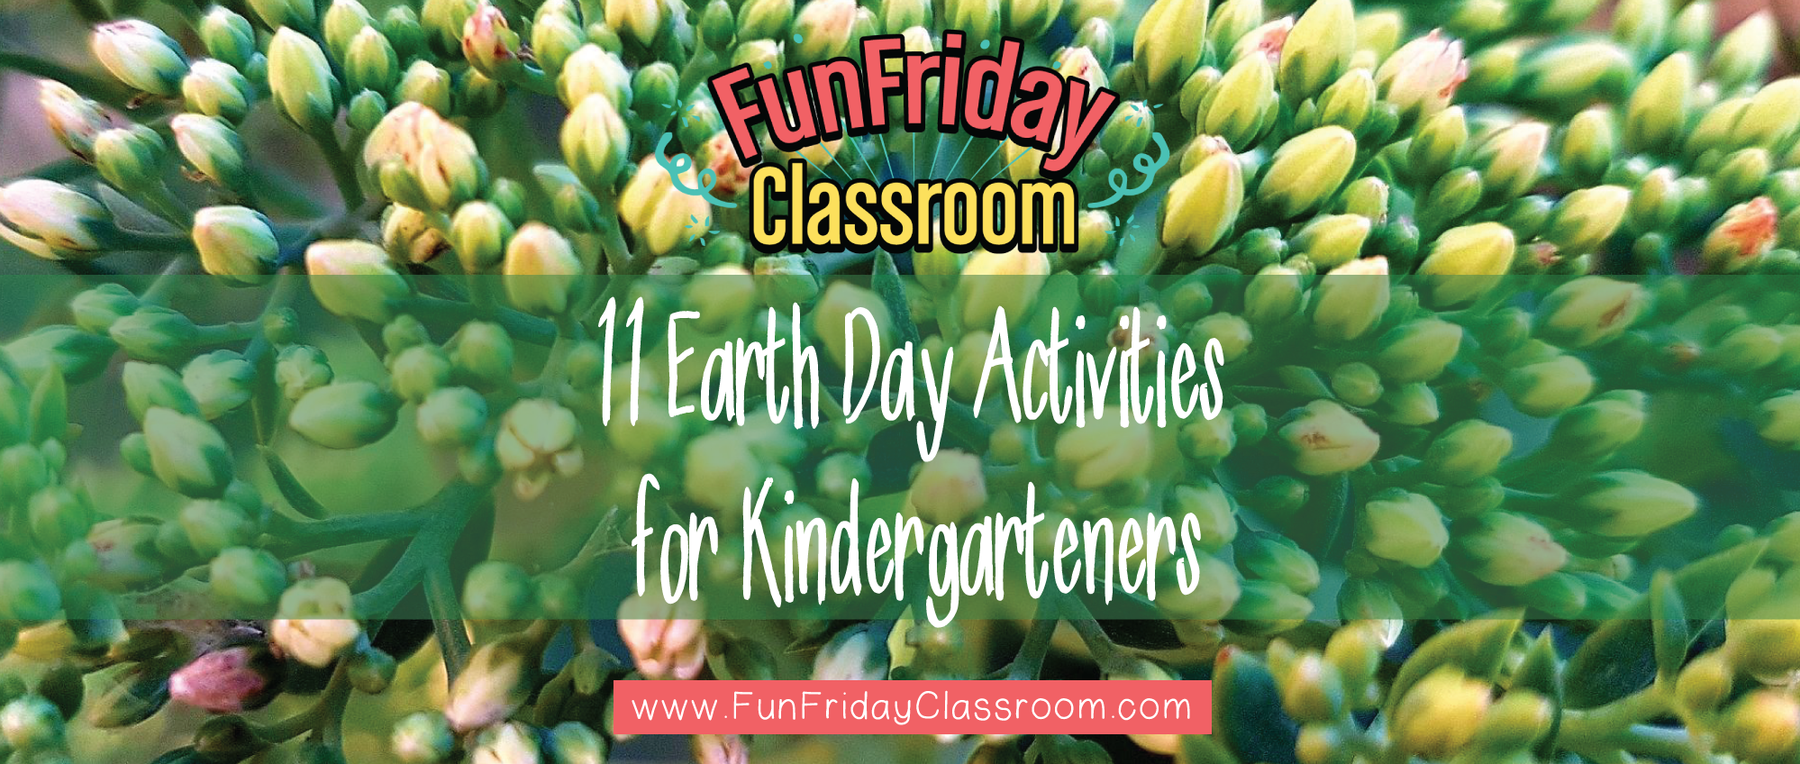 11 Earth Day Activities for Kindergarteners